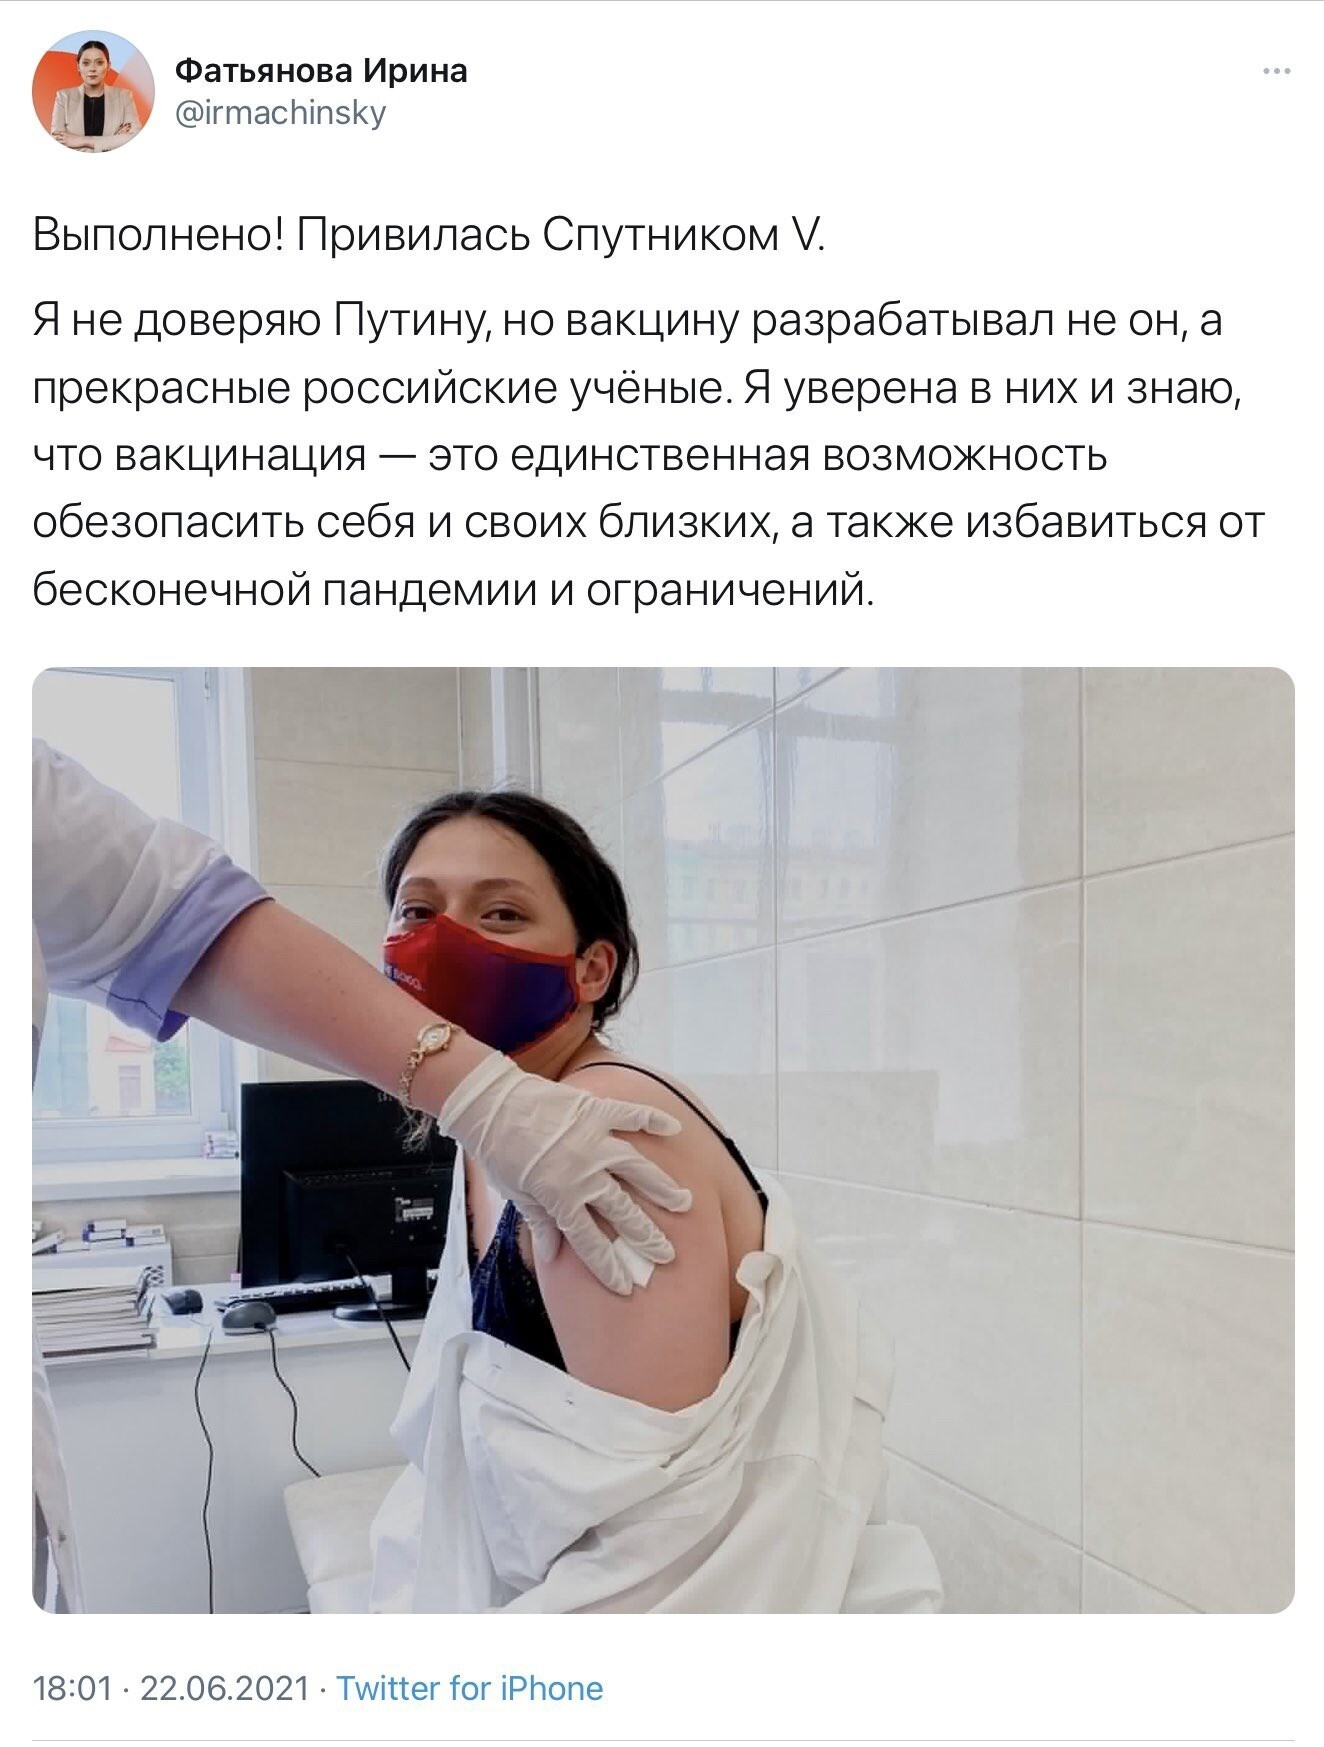 Шутки от пользователей социальных сетей про новые коронавирусные ограничения в Москве (15 фото)